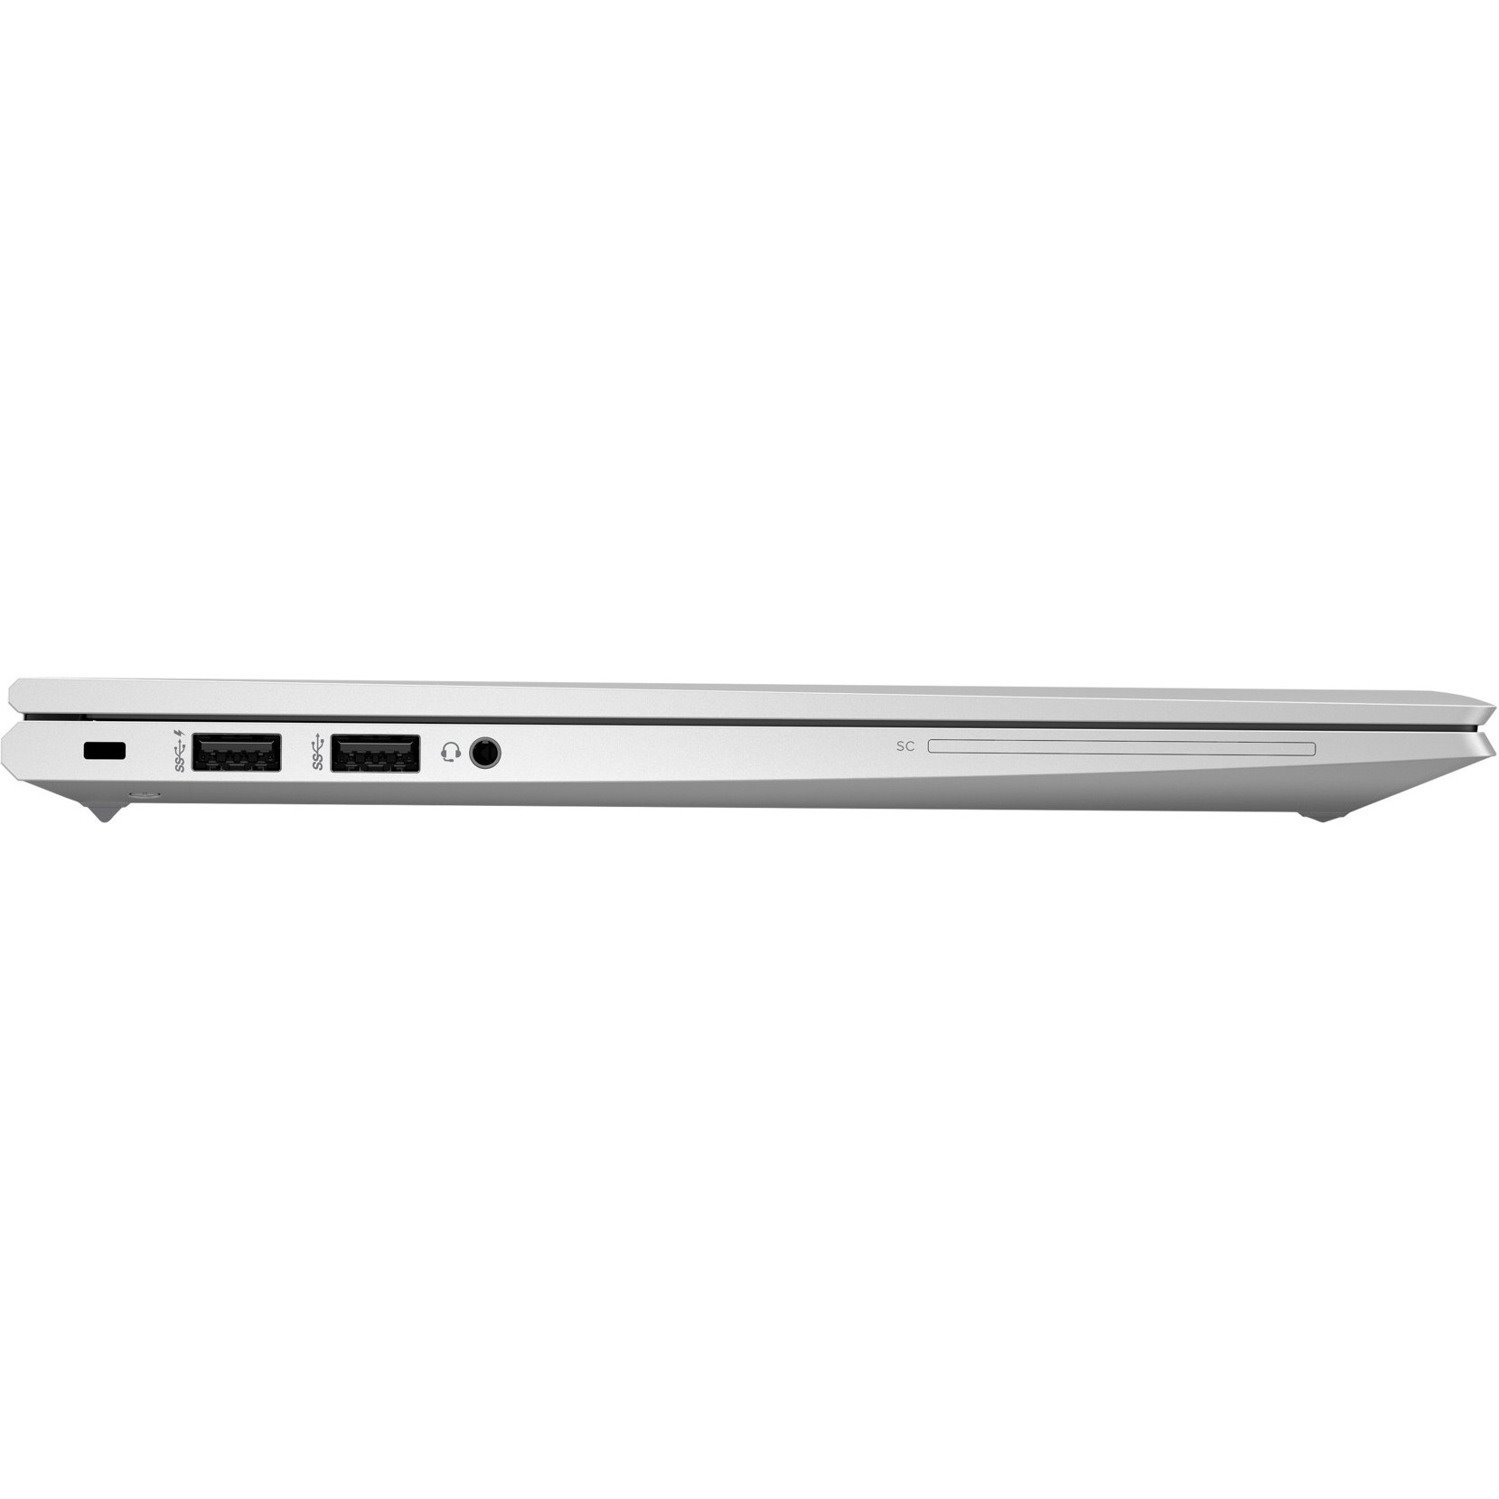 HP EliteBook 845 G8 14" Notebook - Full HD - 1920 x 1080 - AMD Ryzen 7 PRO 5850U Octa-core (8 Core) 1.90 GHz - 16 GB Total RAM - 512 GB SSD